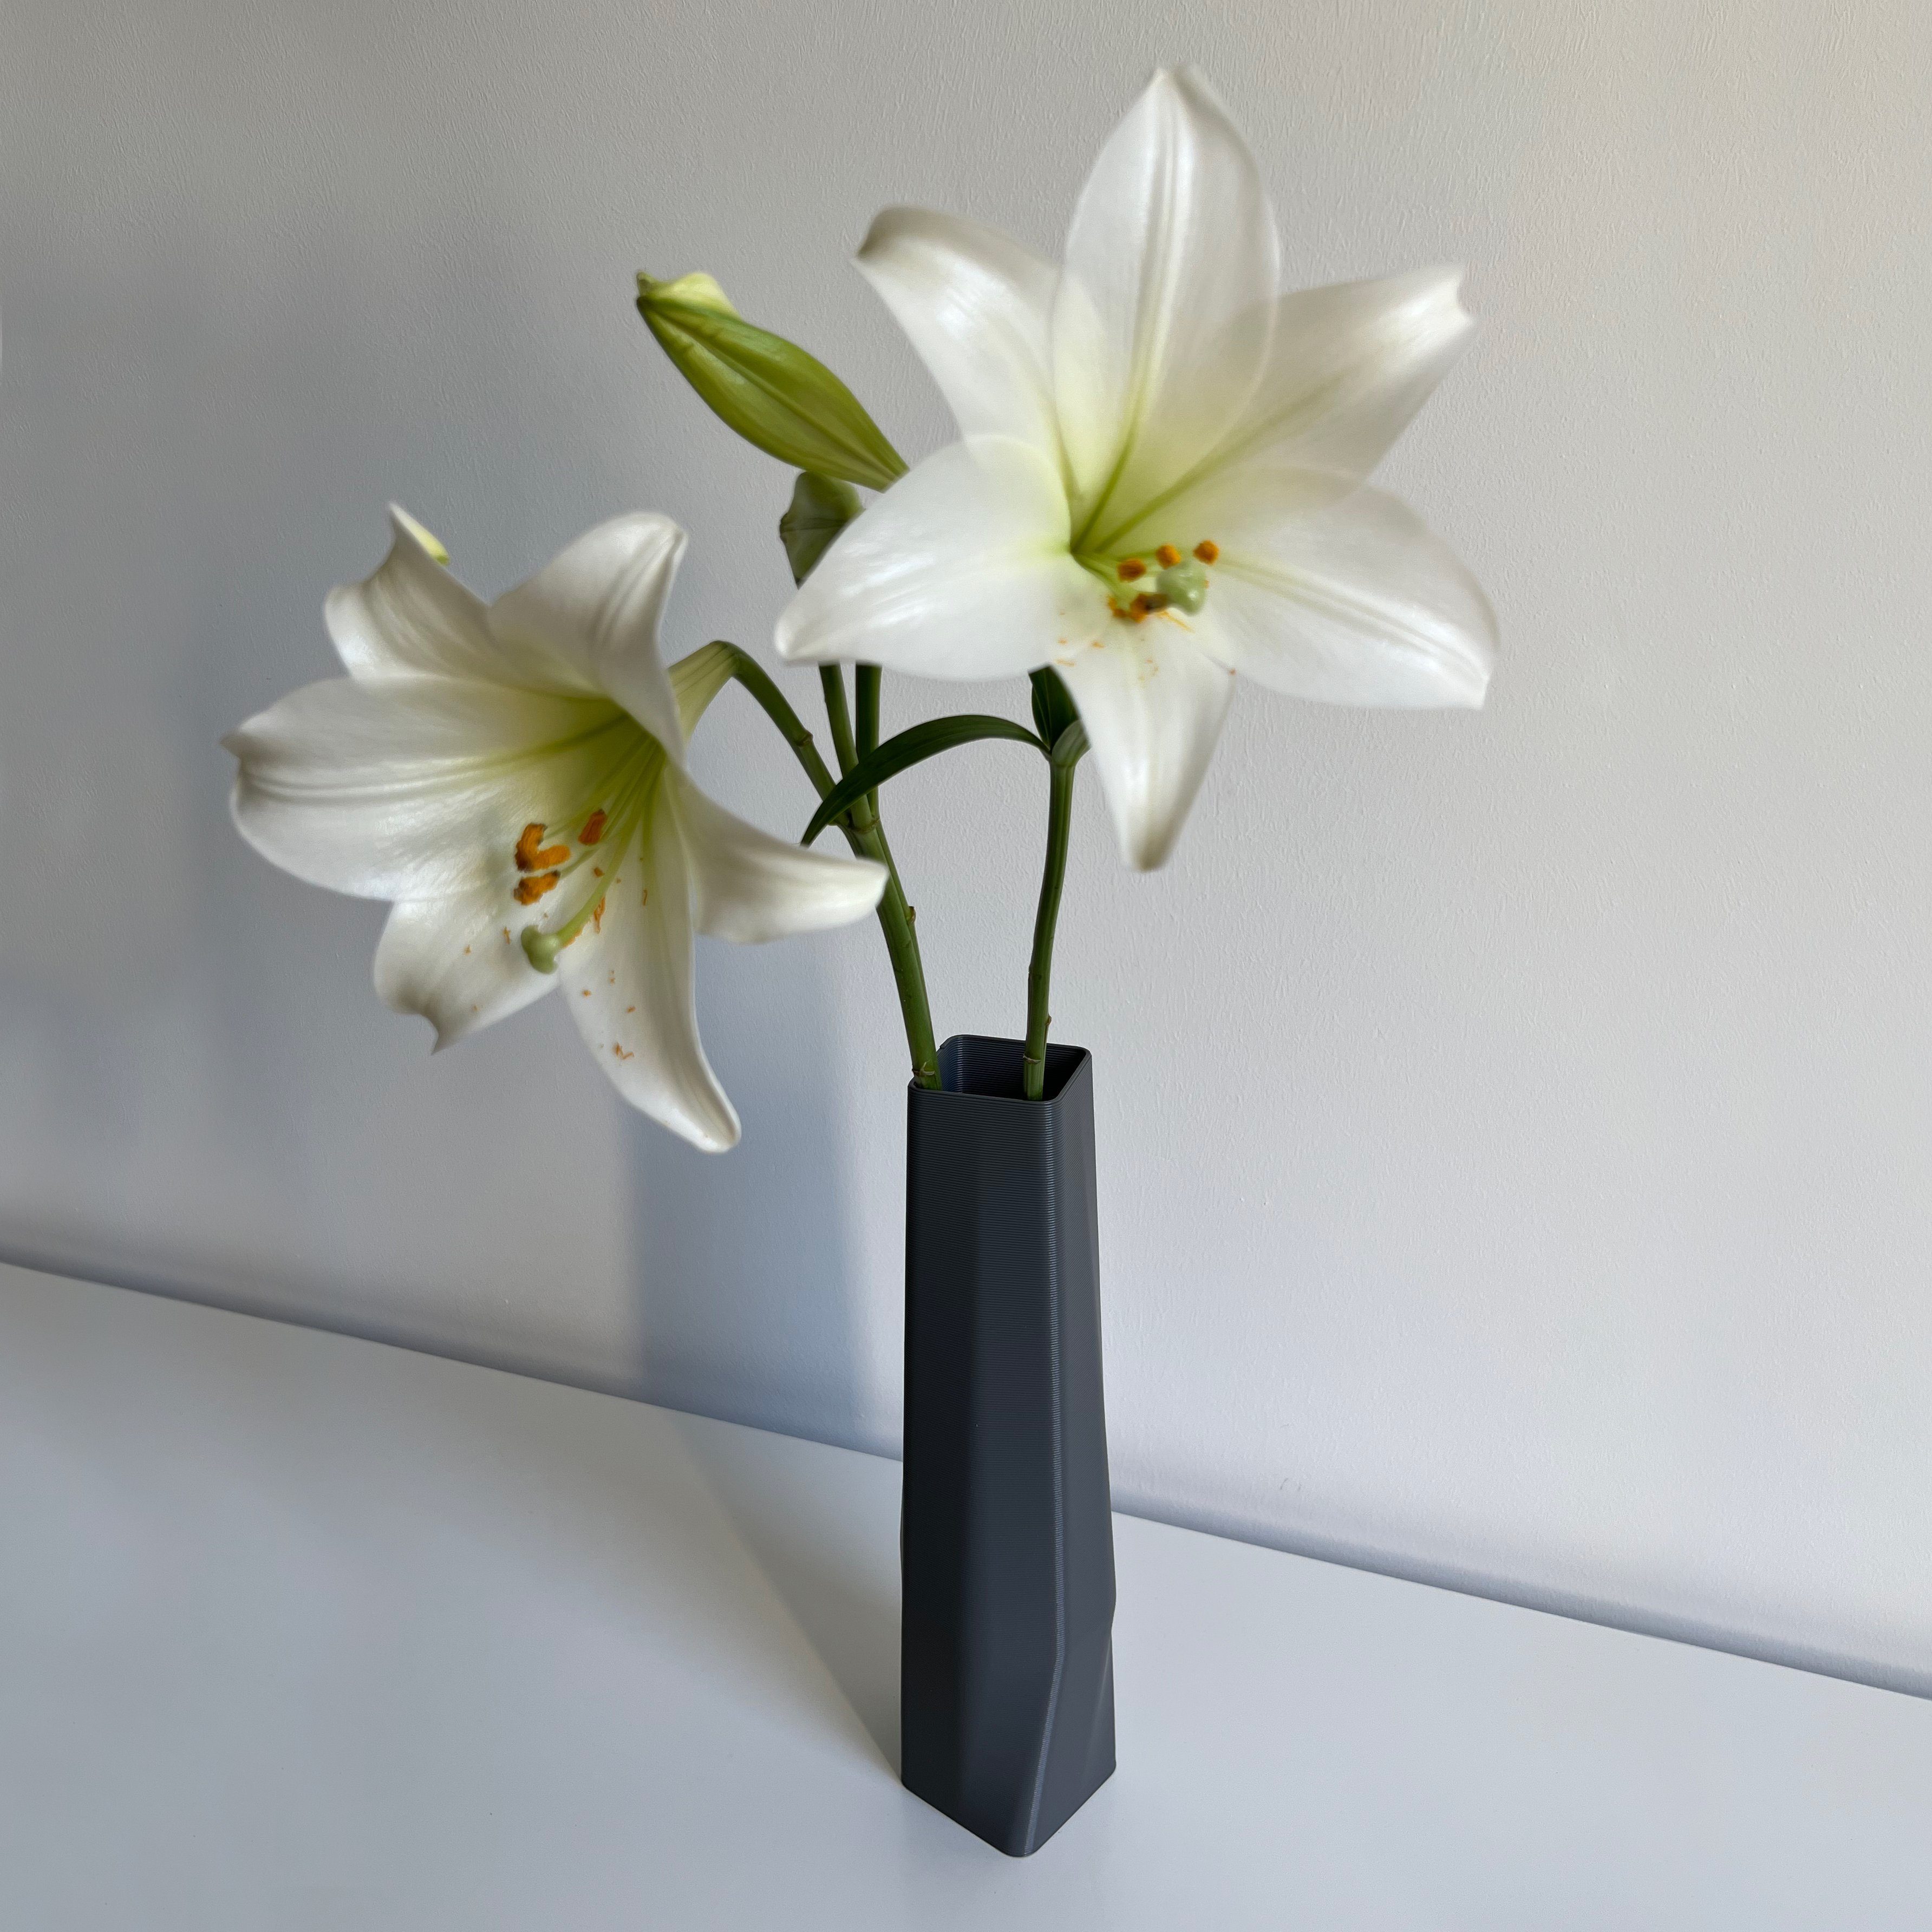 Farben, Wasserdicht; des Decorations square Leichte 3D-Druck viele the 1 Dekovase vase 3D innerhalb Shapes (Rillung) Struktur Grau Materials Vase), (Einzelmodell, (basic), Vasen, 100% - -